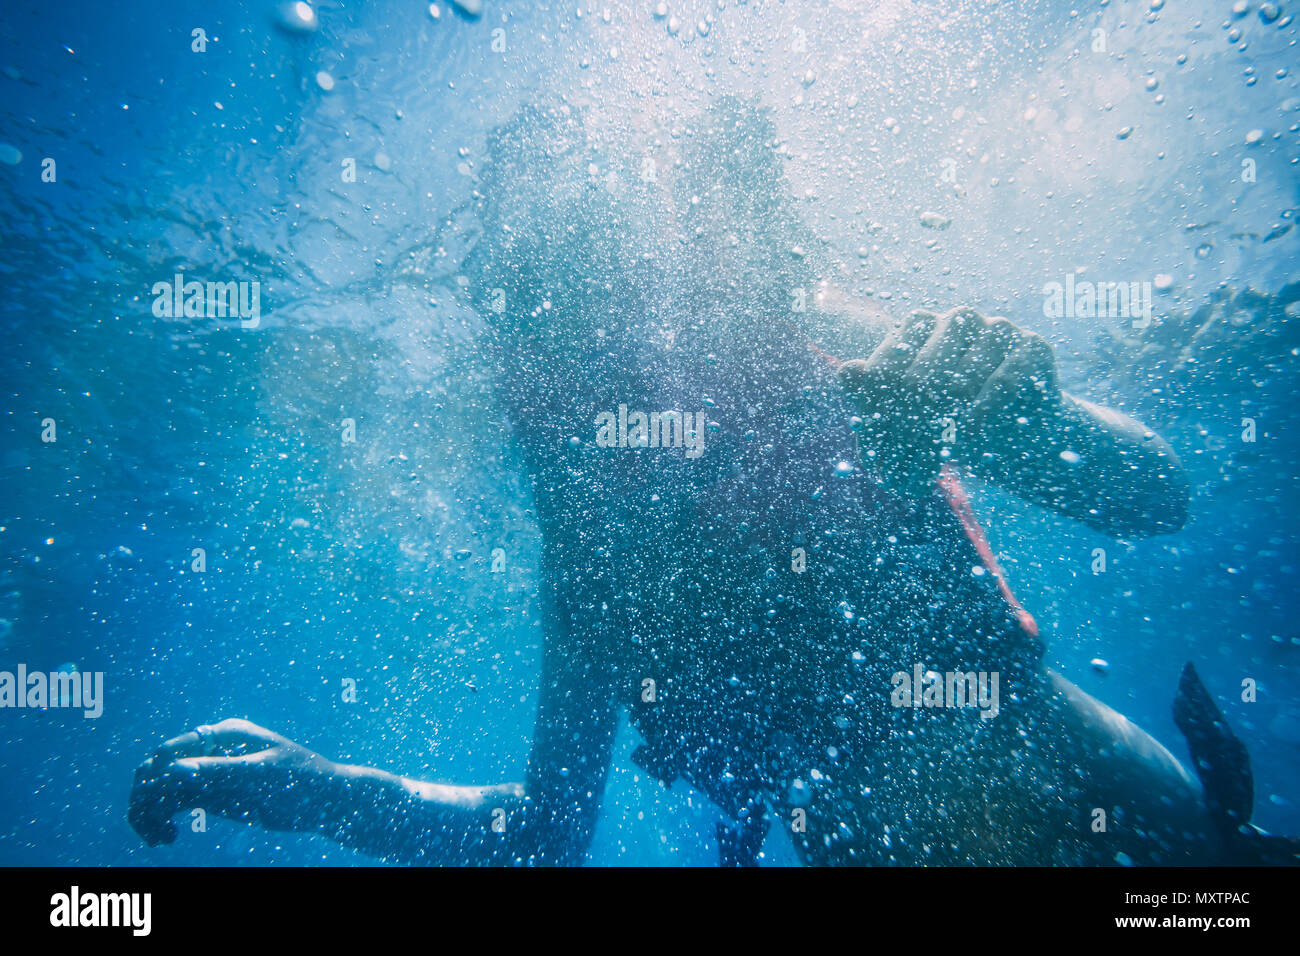 Die Silhouette eines attraktiven schlanken Frau unter Wasser. Die Schönheit der Ocean World. Idealer Hintergrund für die verschiedenen Arten von Marine Collagen und Illustrationen in Blautönen. Stockfoto